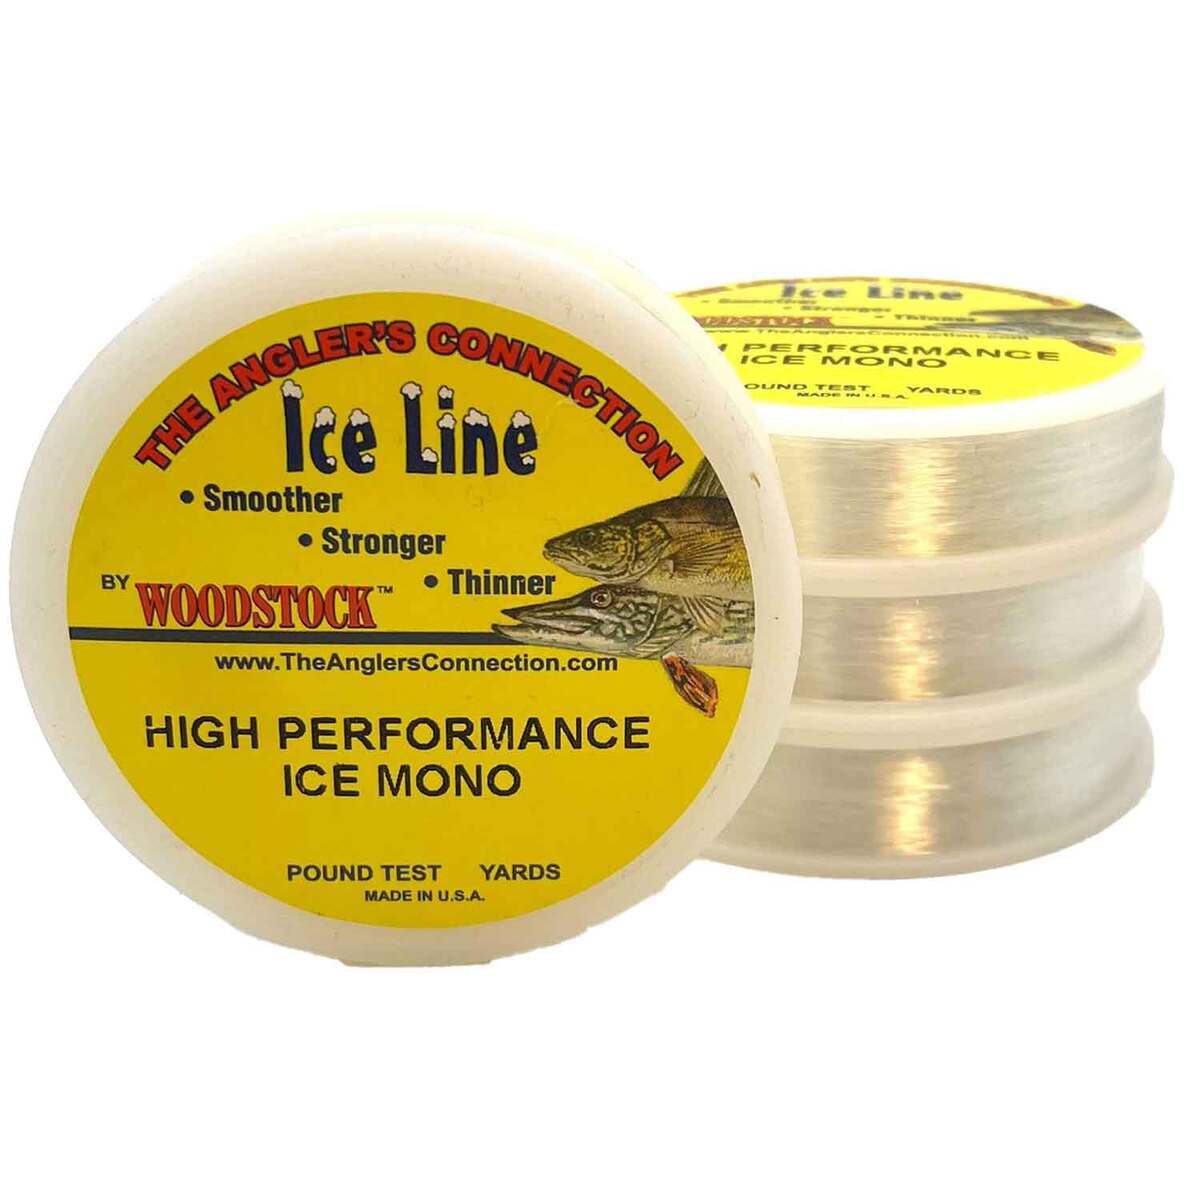 https://www.sportsmans.com/medias/woodstock-line-co-high-performance-ice-mono-ice-fishing-line-2lb-clear-100yd-1820694-1.jpg?context=bWFzdGVyfGltYWdlc3w3NzUwM3xpbWFnZS9qcGVnfGFEZ3dMMmhtTWk4eE1UTXpOVGMwTXpjek16YzVNQzh4TWpBd0xXTnZiblpsY25OcGIyNUdiM0p0WVhSZlltRnpaUzFqYjI1MlpYSnphVzl1Um05eWJXRjBYM050ZHkweE9ESXdOamswTFRFdWFuQm58MDk4OGYxMzQ2Y2VmYjU5MmEzZjk2NmI4M2U0NjQ5YjNjYTMxNTg0YmI4NDVhYzg2ZDdkYjJhNjU4YjhkZDQ3MQ